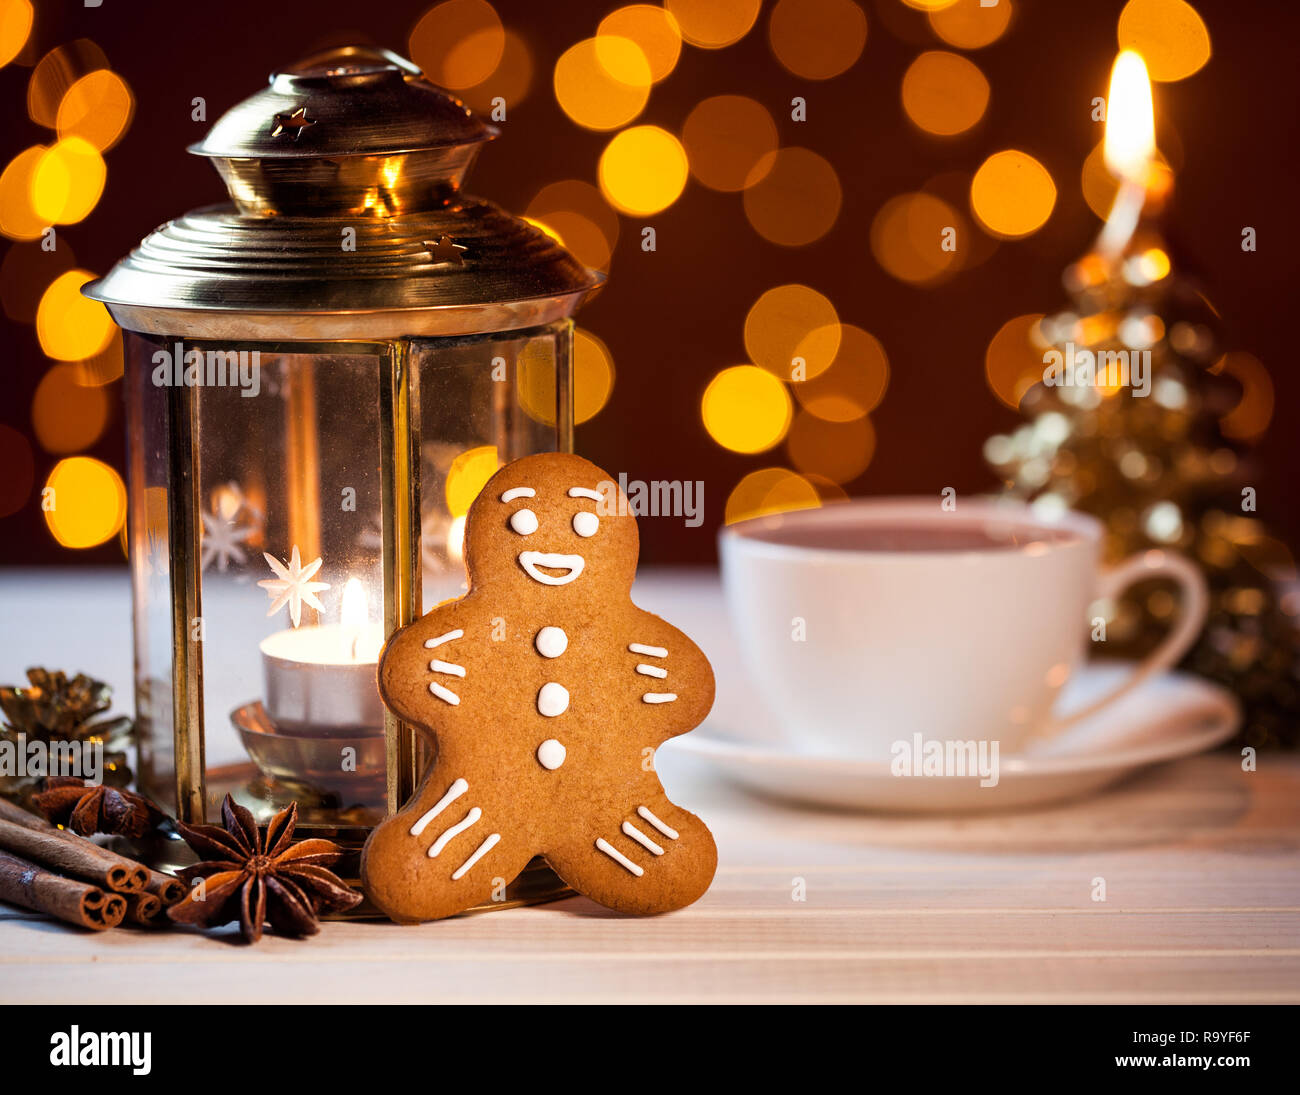 Gingerbread près de lanterne, espèces et tasse de café au flou d'arrière-plan jaune Banque D'Images